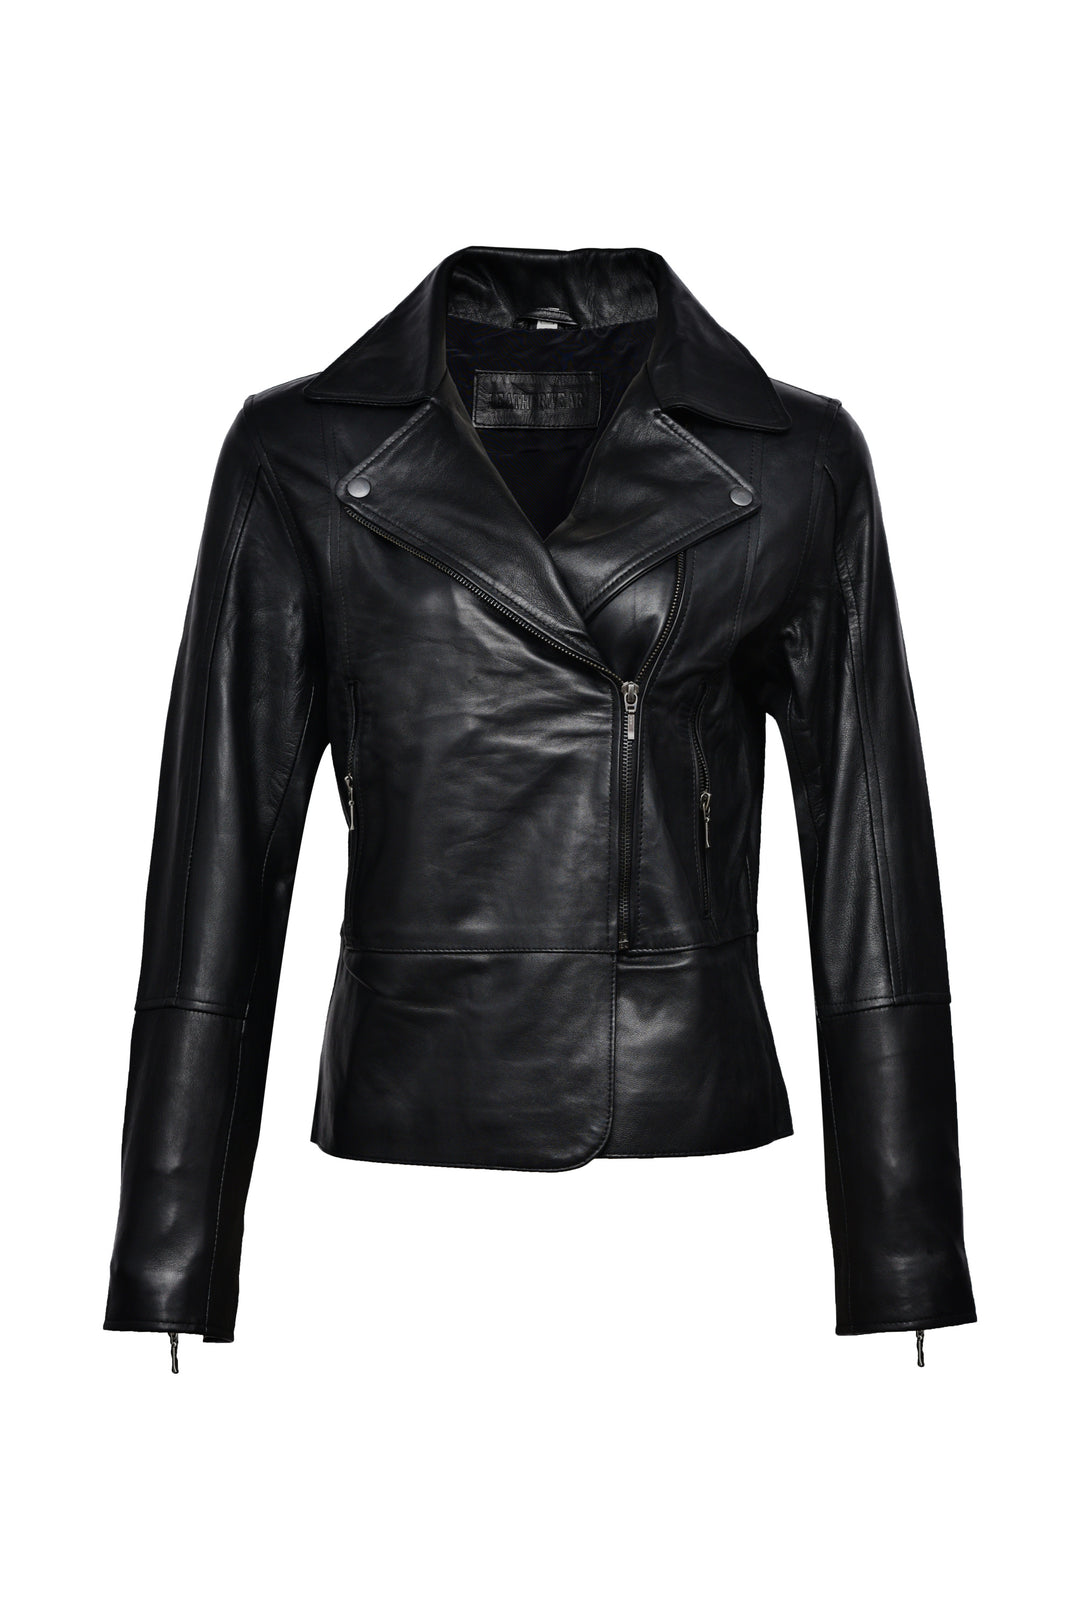 Black Biker Leather Jacket Women